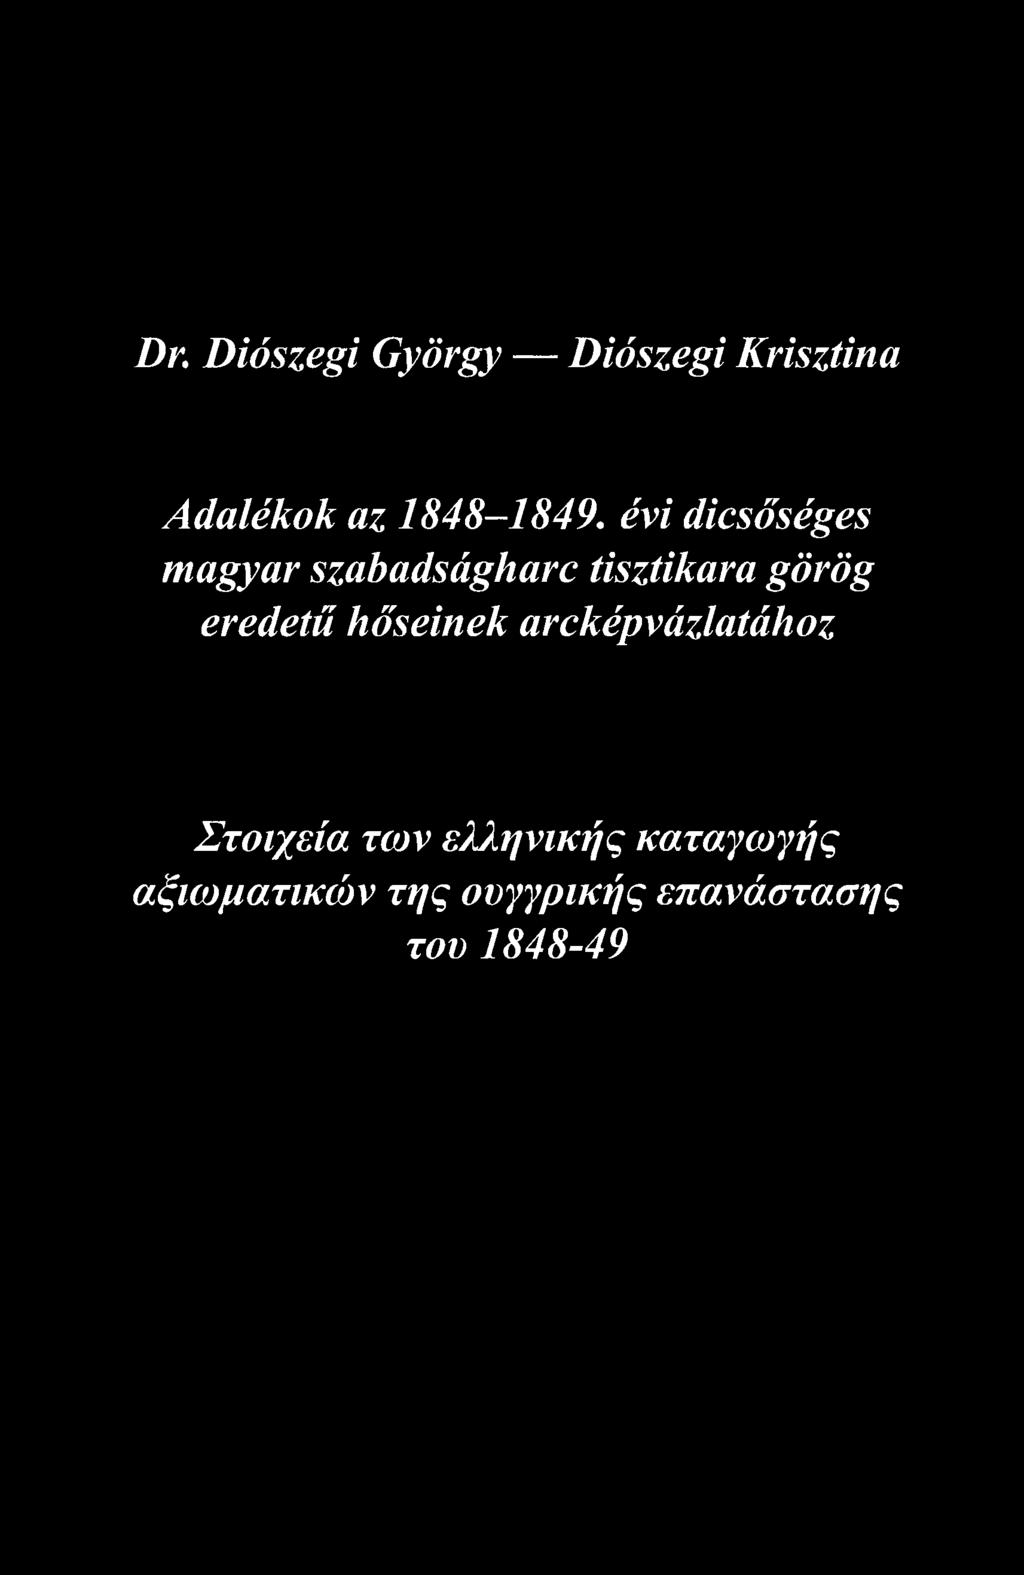 Dr. Diószegi György Diószegi Krisztina Adalékok az 1848-1849, évi dicsőséges magyar szabadságharc tisztikara görög